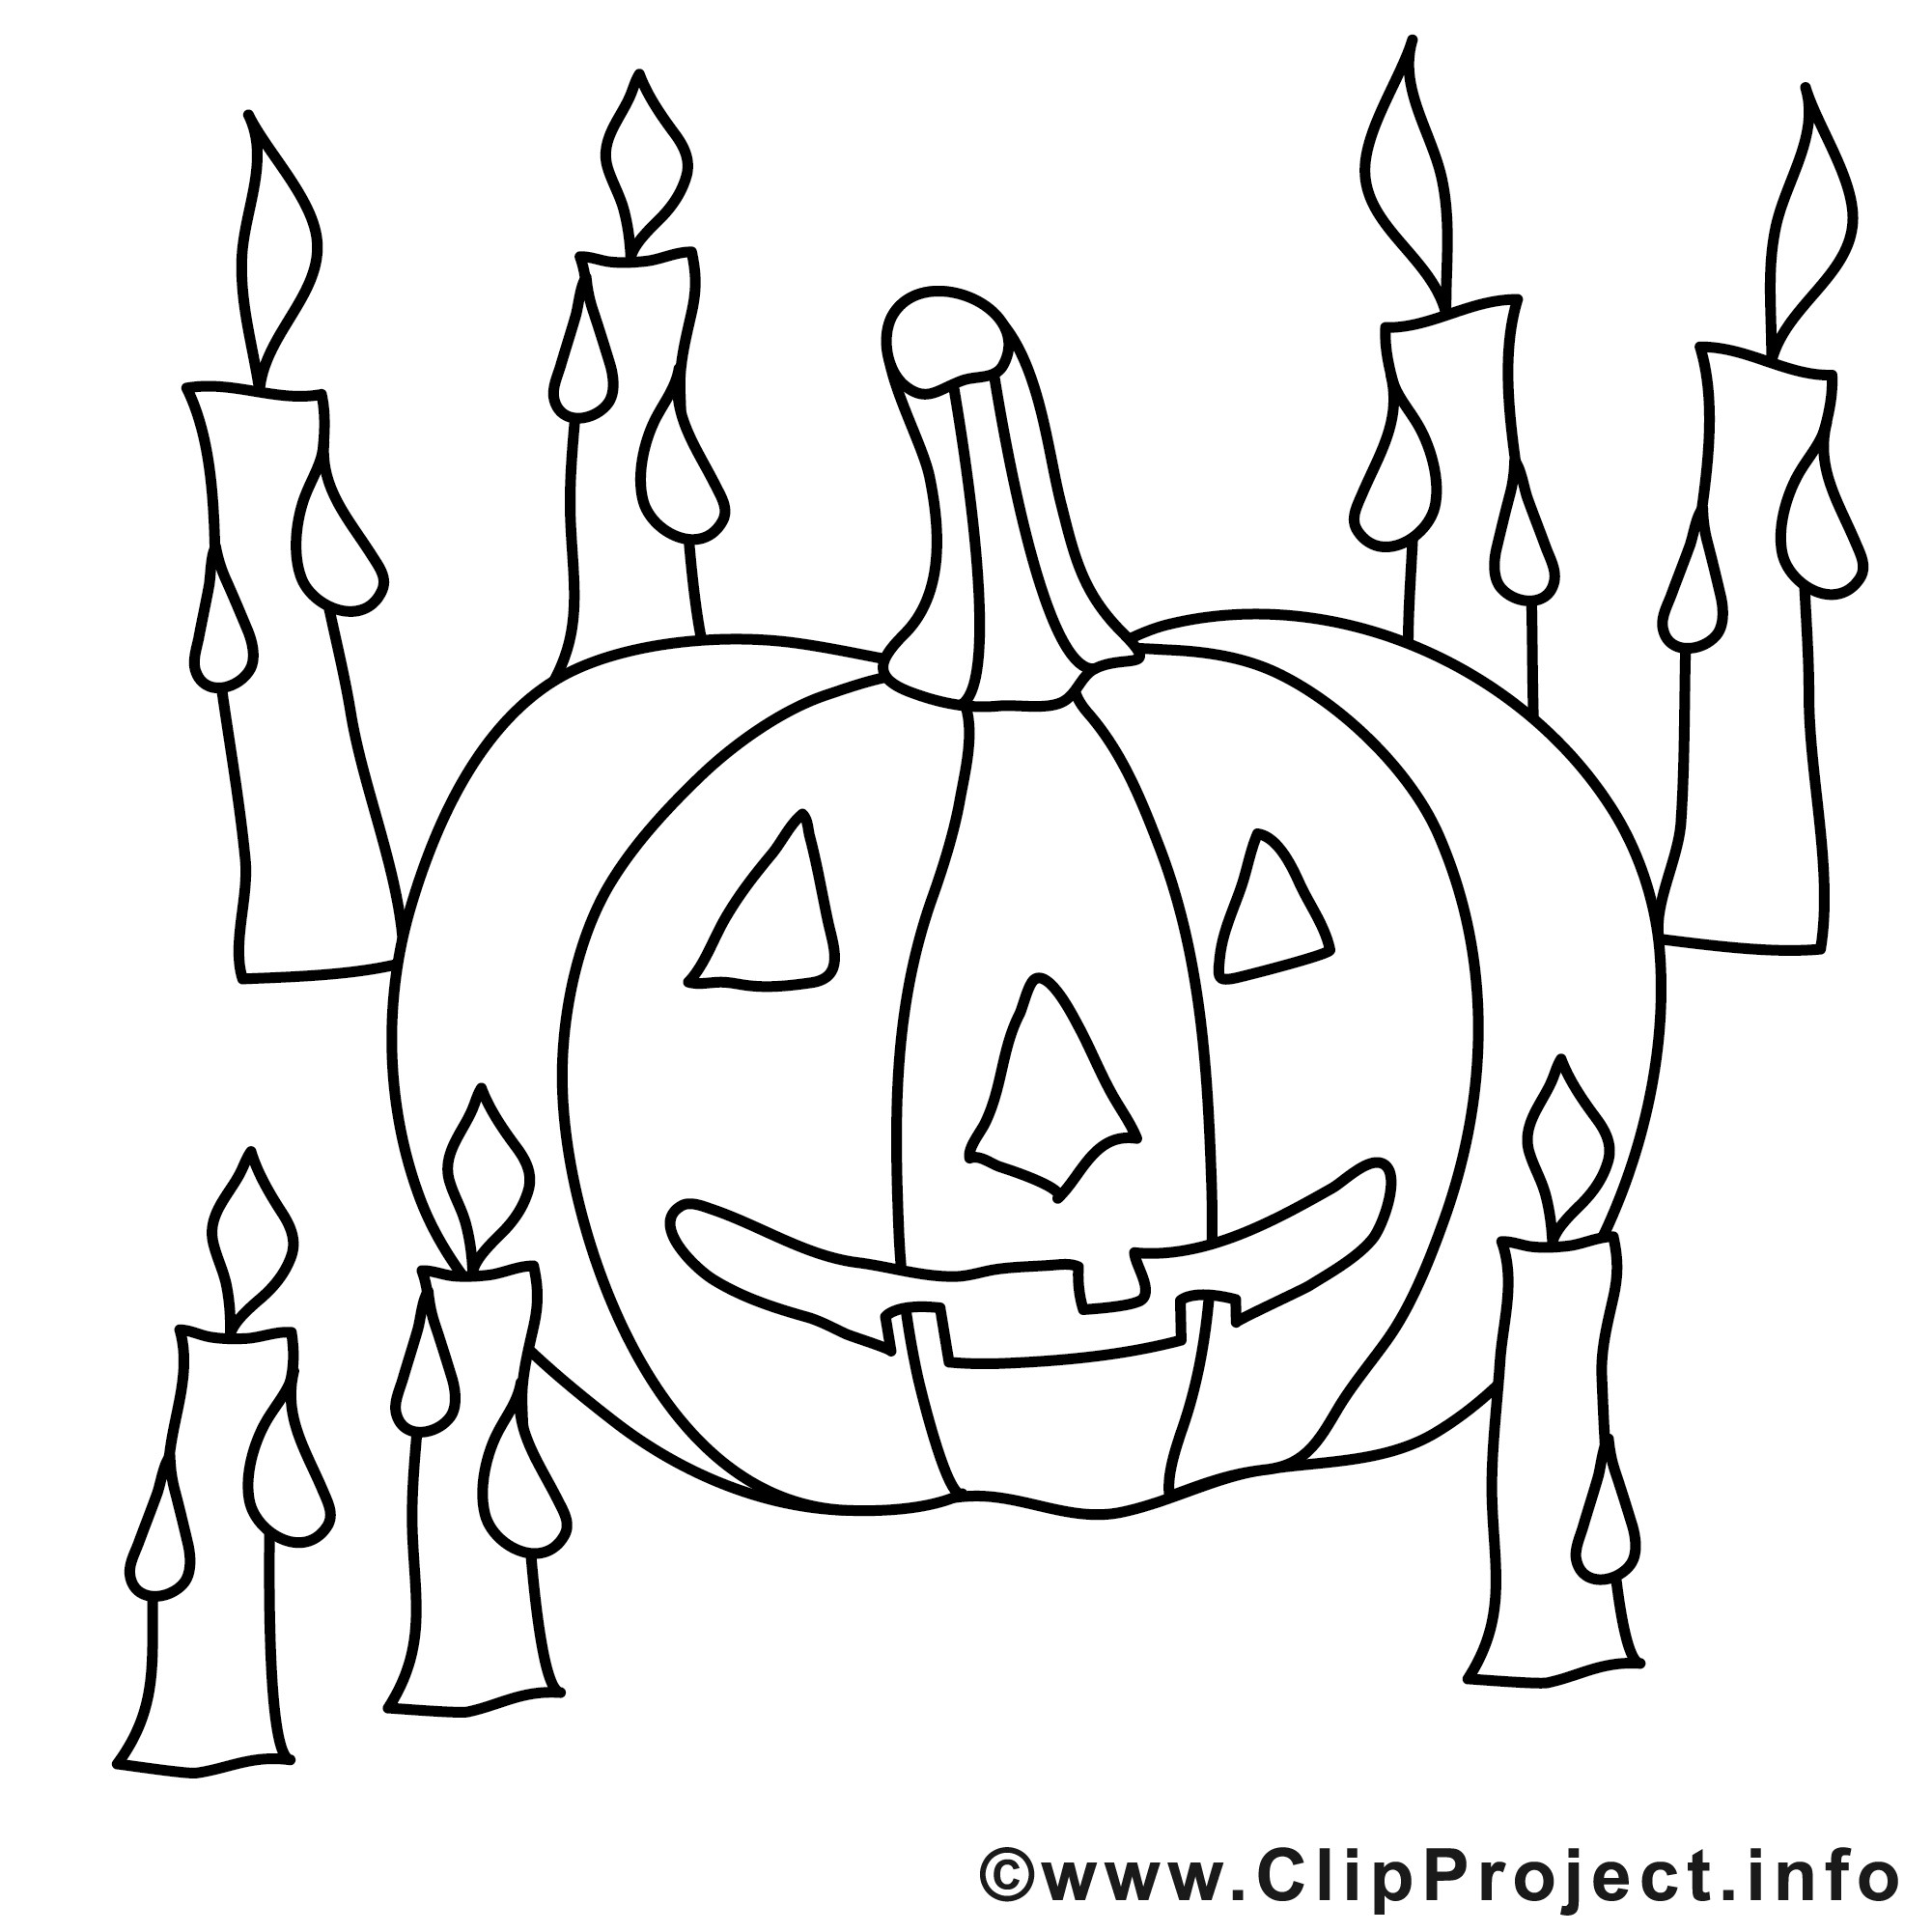 Malvorlagen Kostenlos
 Halloween Malvorlage kostenlos mit Kerzen und Kuerbis